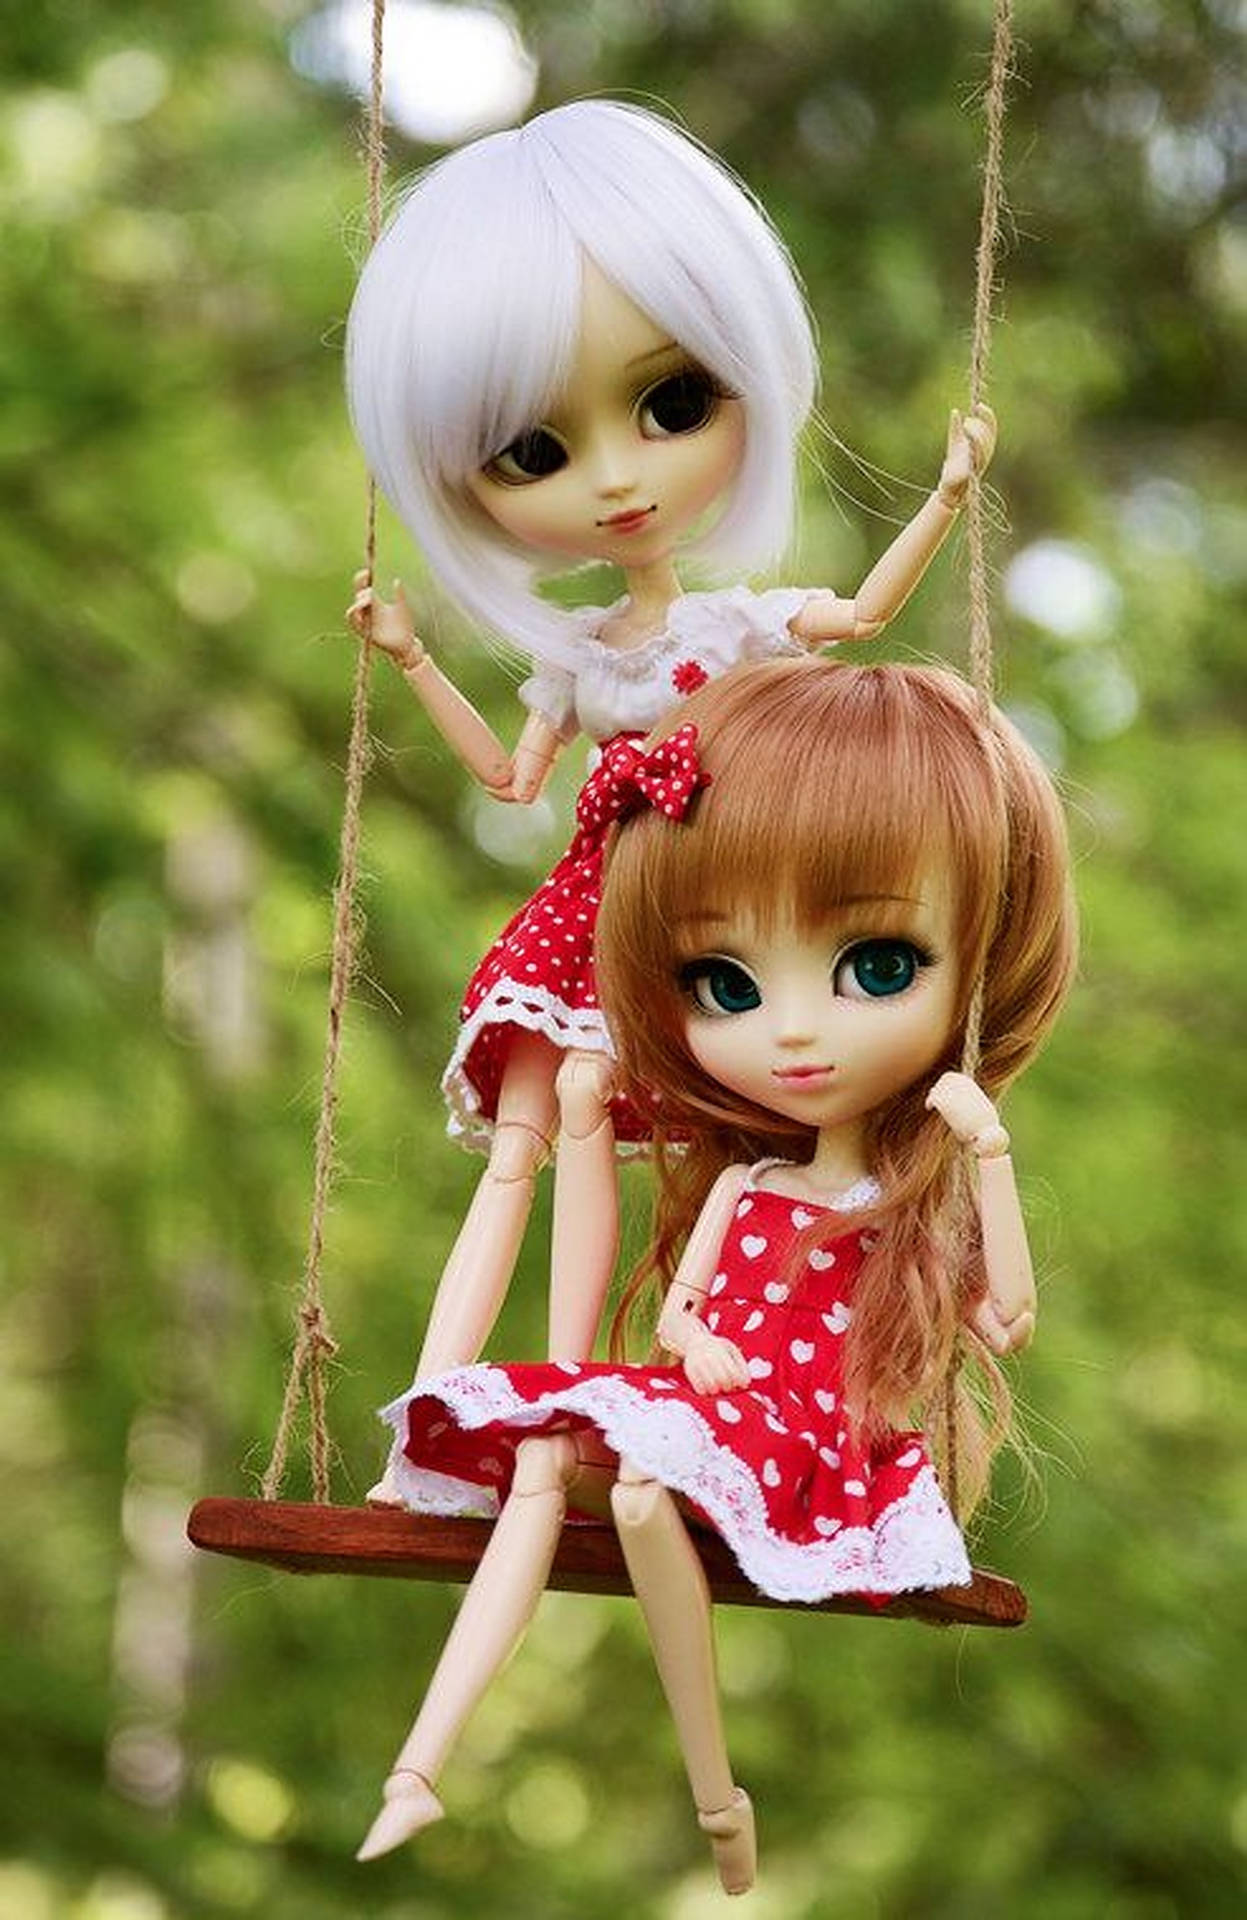 Dolls On A Swing